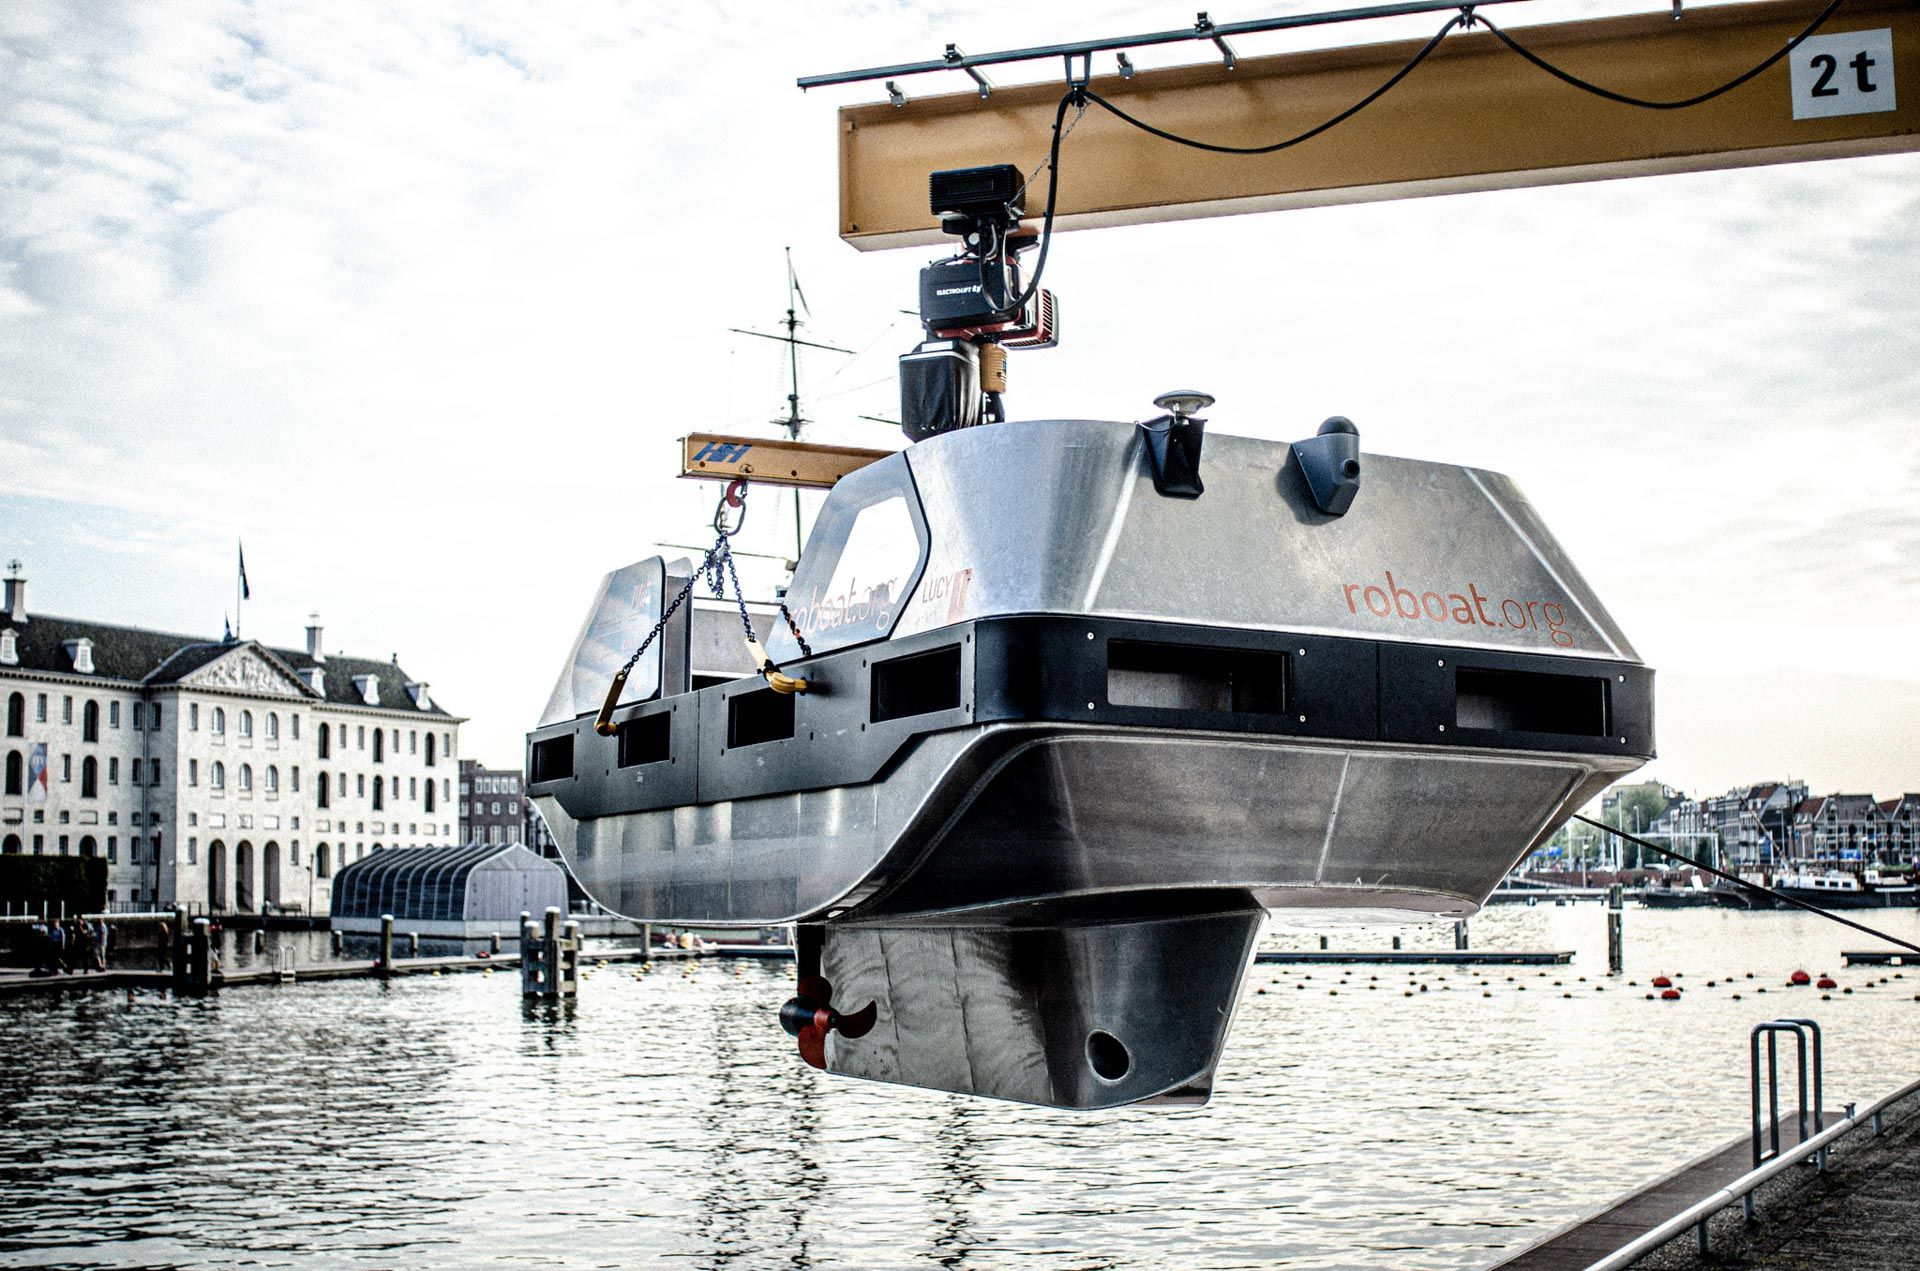 バッテリー稼働で自律運転が可能なMITの水上タクシー「Roboat」、アムステルダム運河で航行を開始